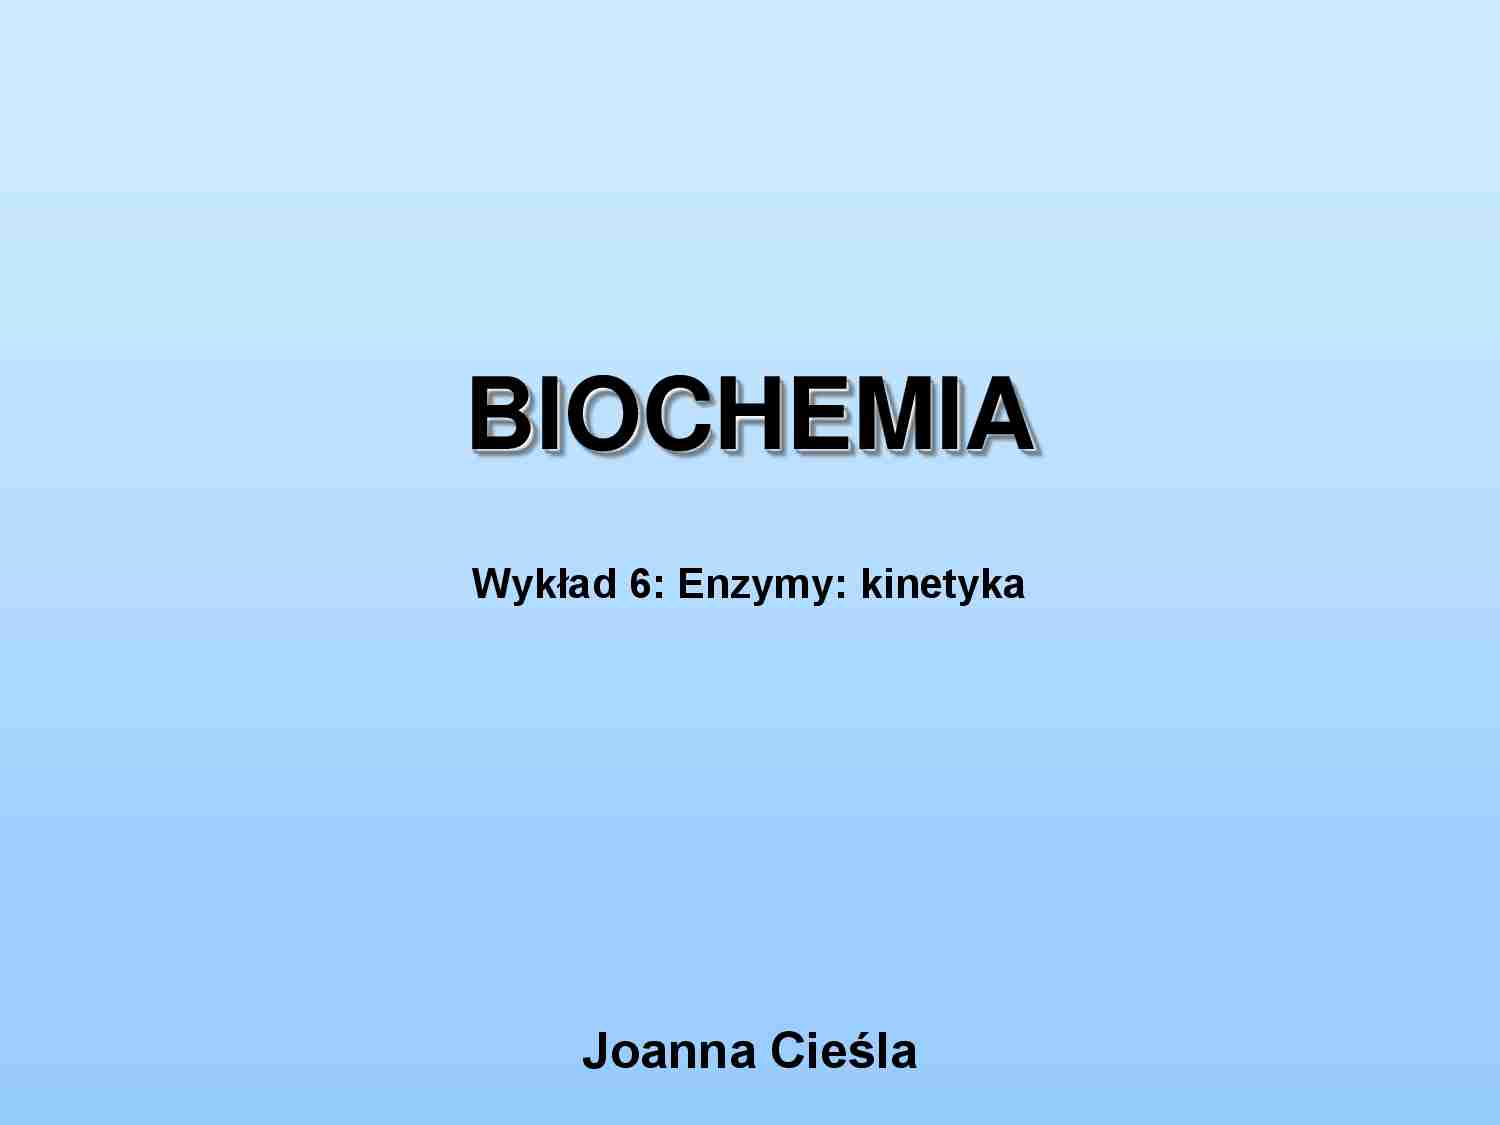  Enzymy, kinetyka-wykład - strona 1